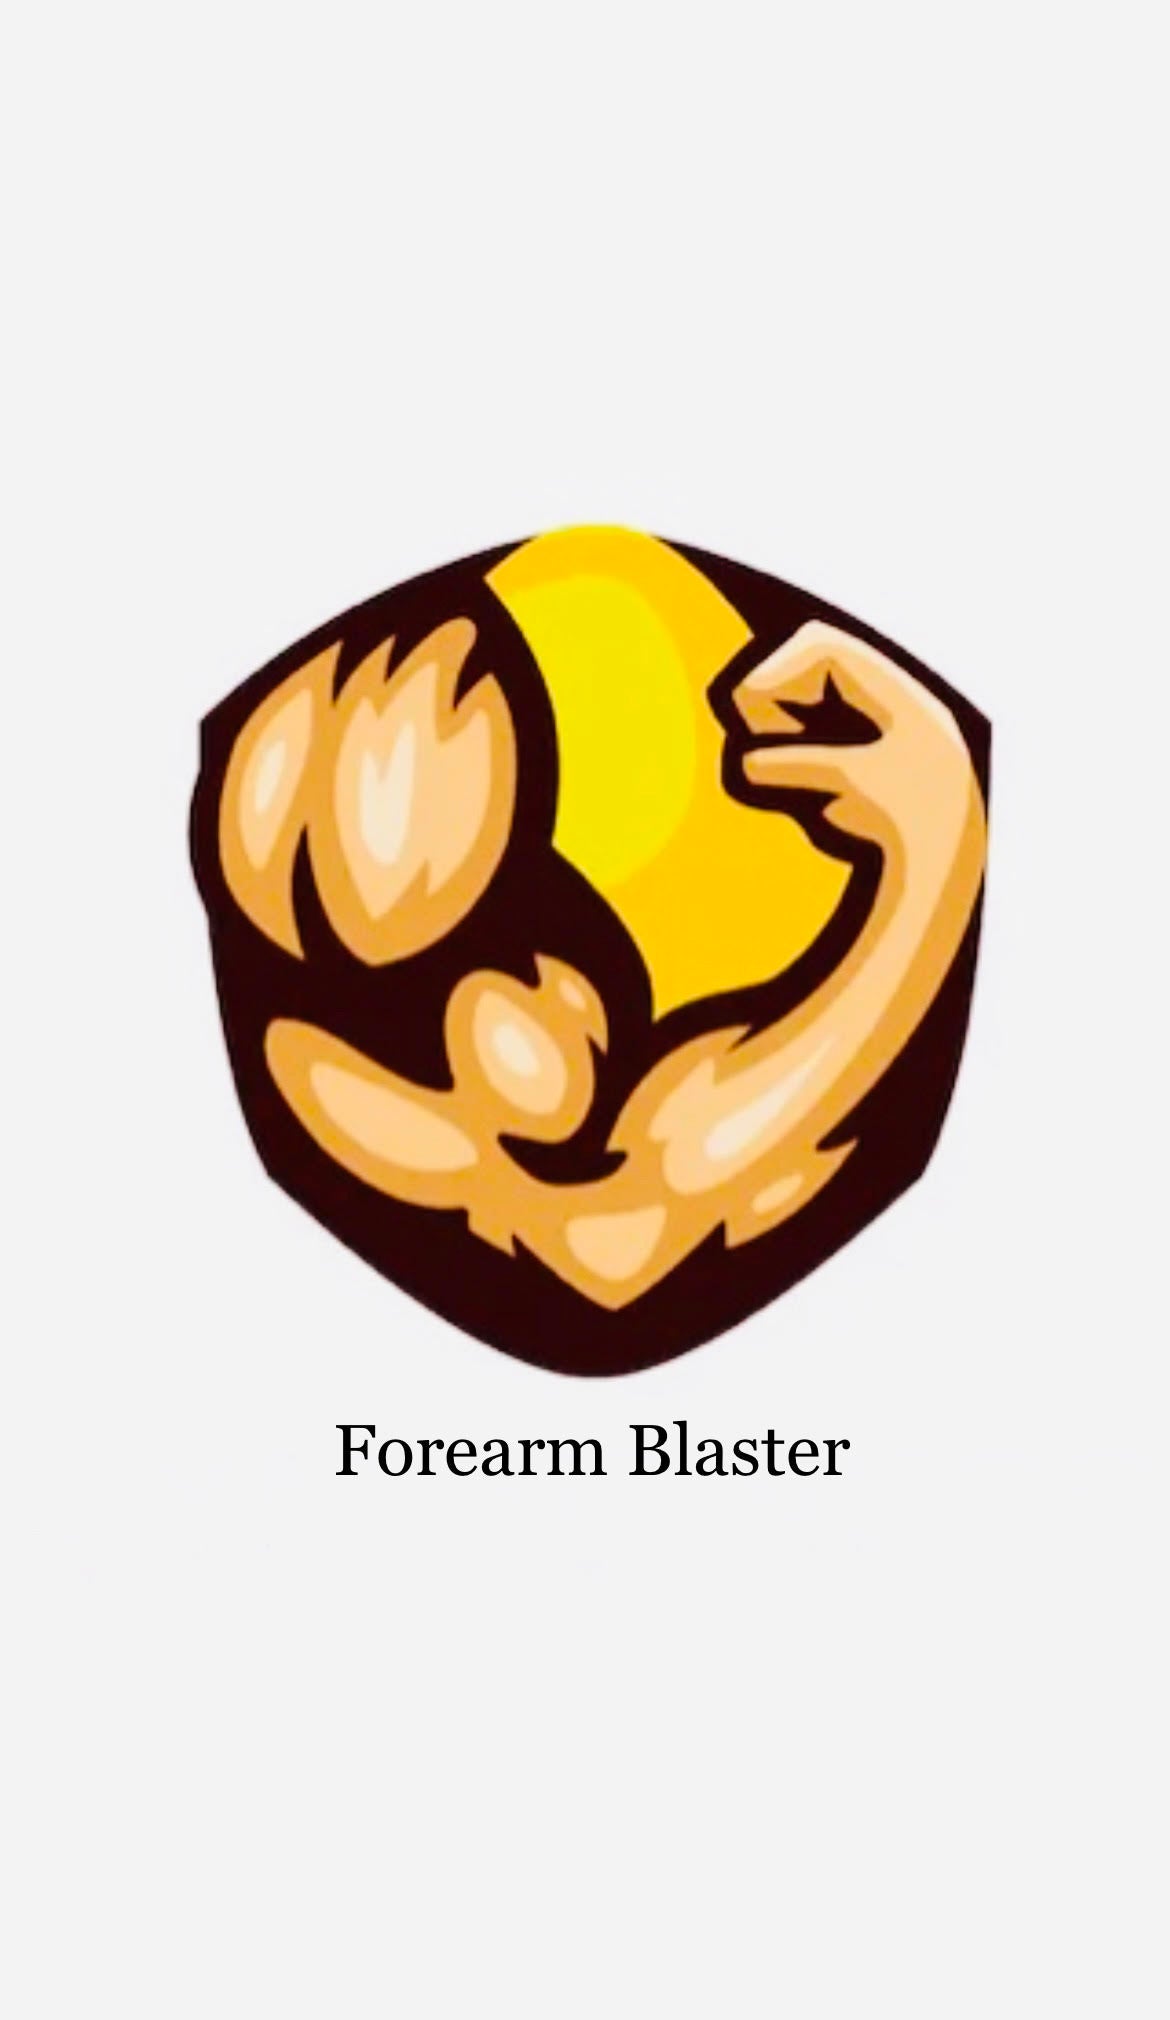 Forearm Blaster